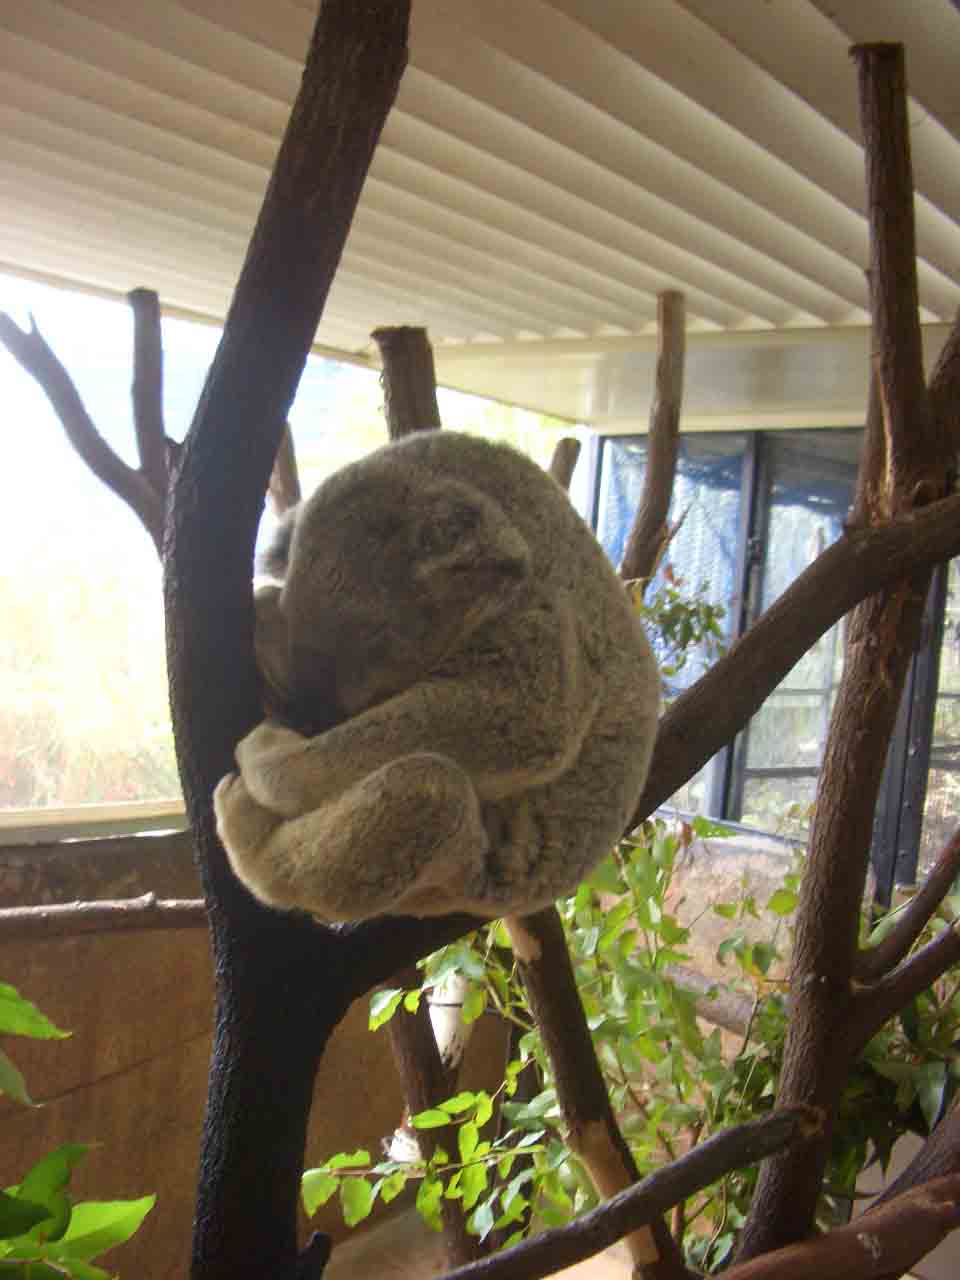 dormiglione_i koala sono una vrea sfida alla forza di gravita', ma se guardi bene dietro... hanno le natiche prensili...